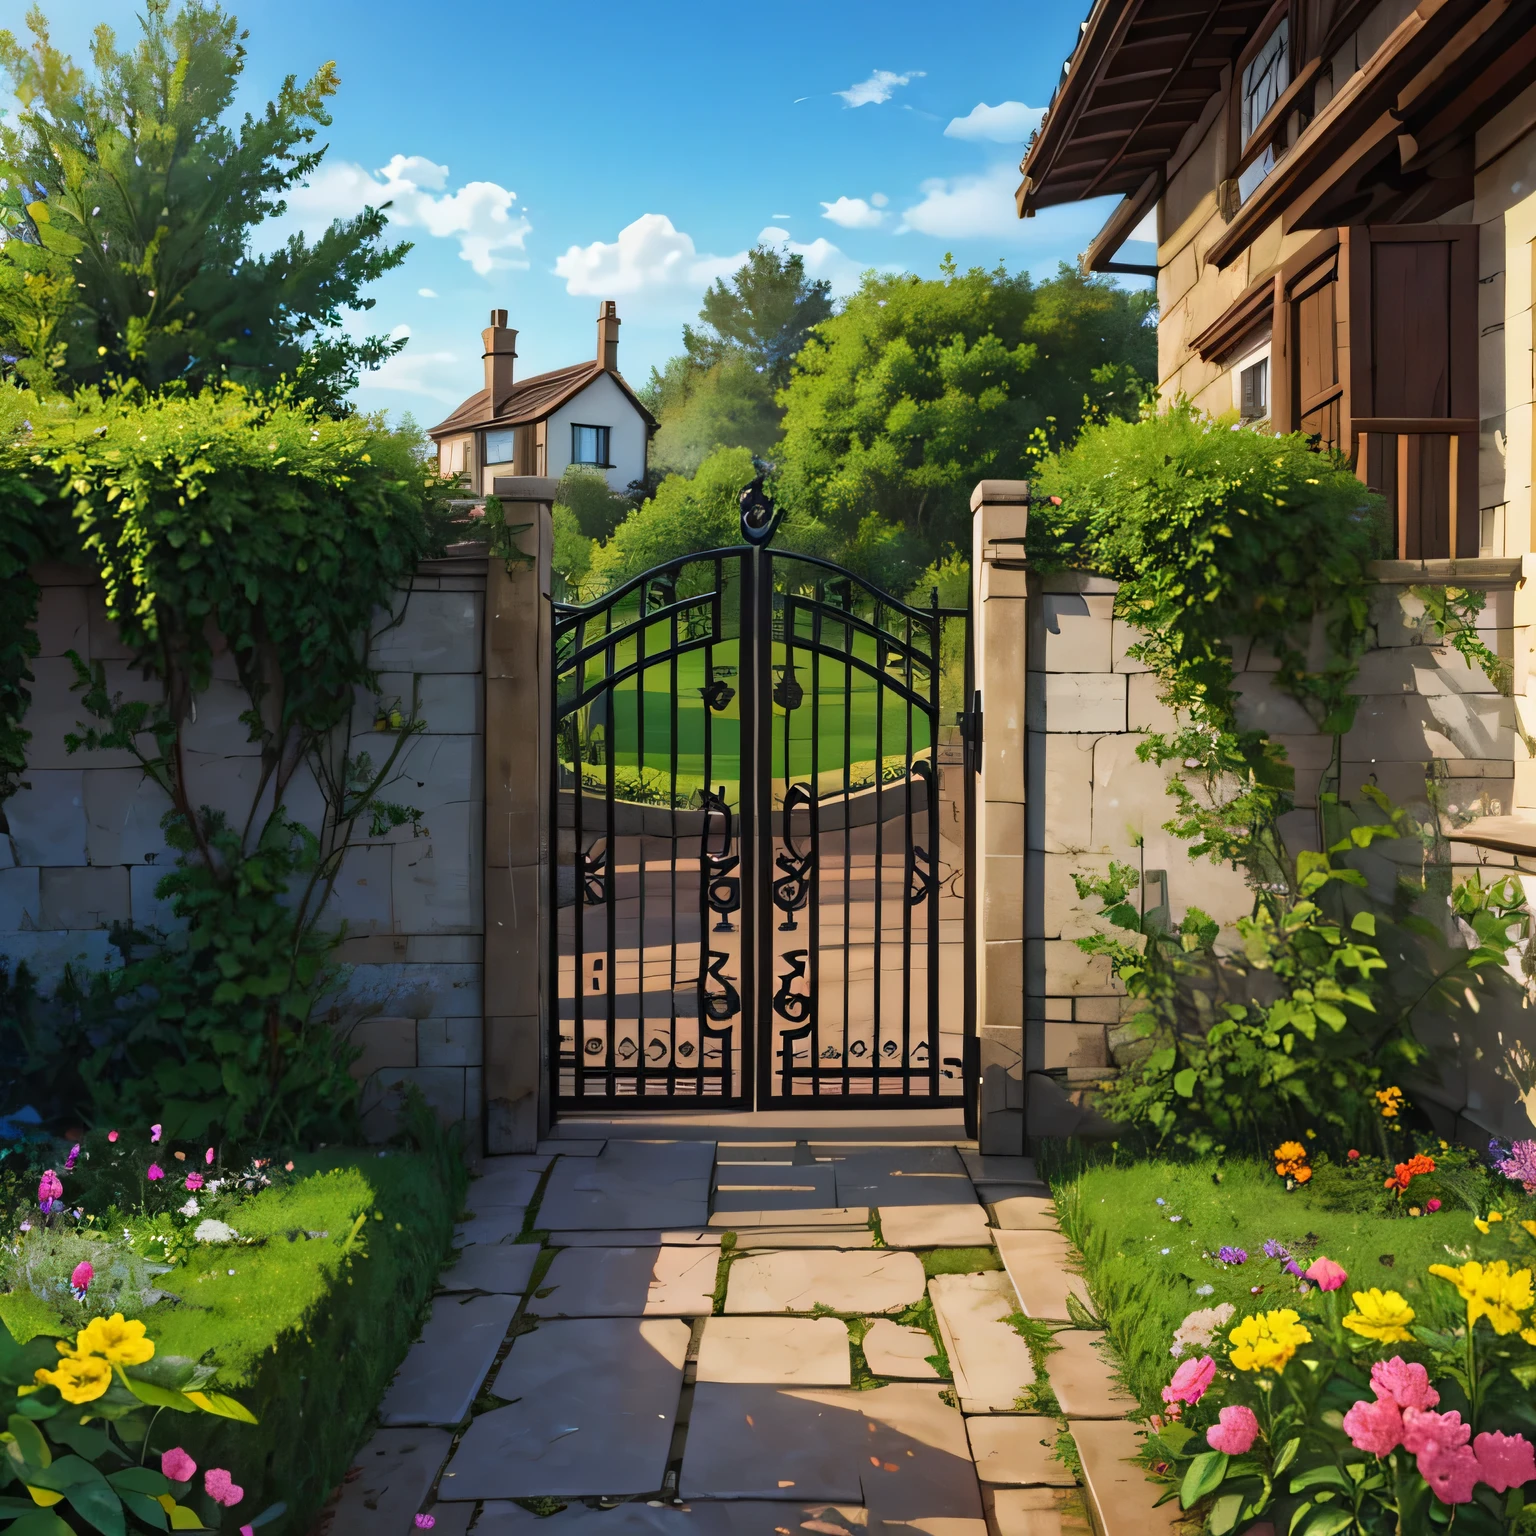 ворота позади дома в саду.